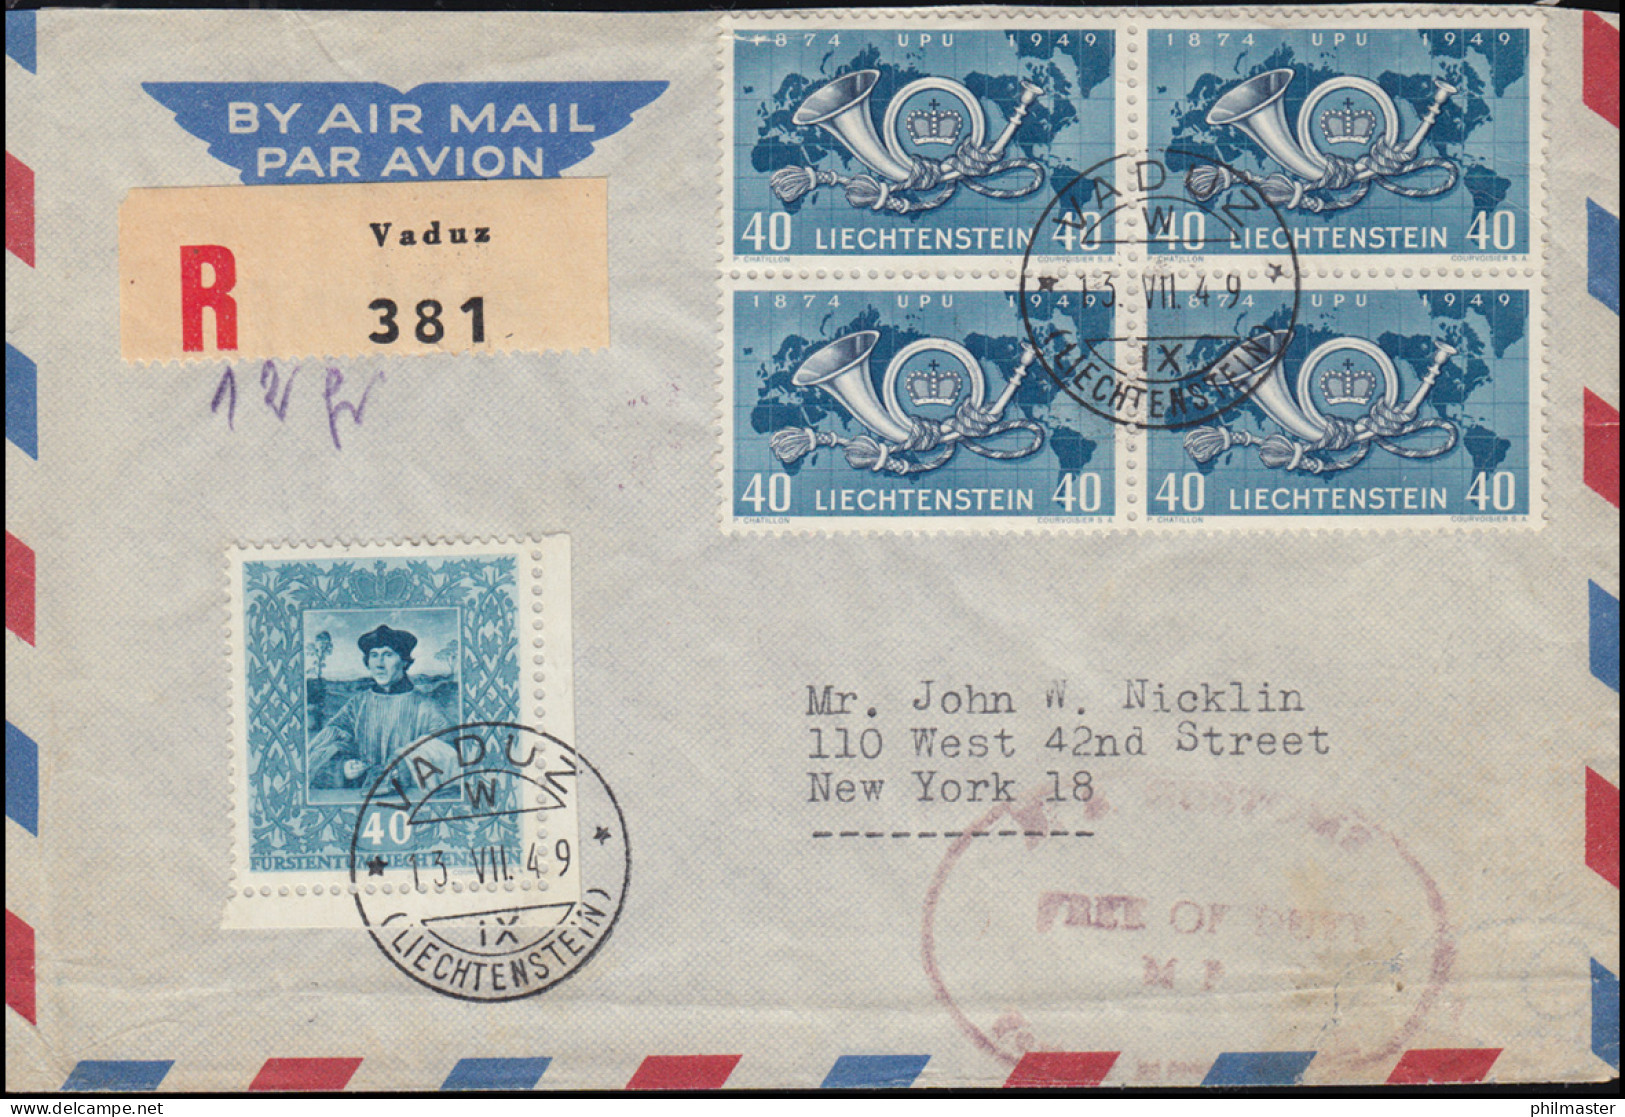 Liechtenstein 277 Weltpostverein Im Viererbock Mit 271 R-Brief VADUZ 13.7.1949 - U.P.U.